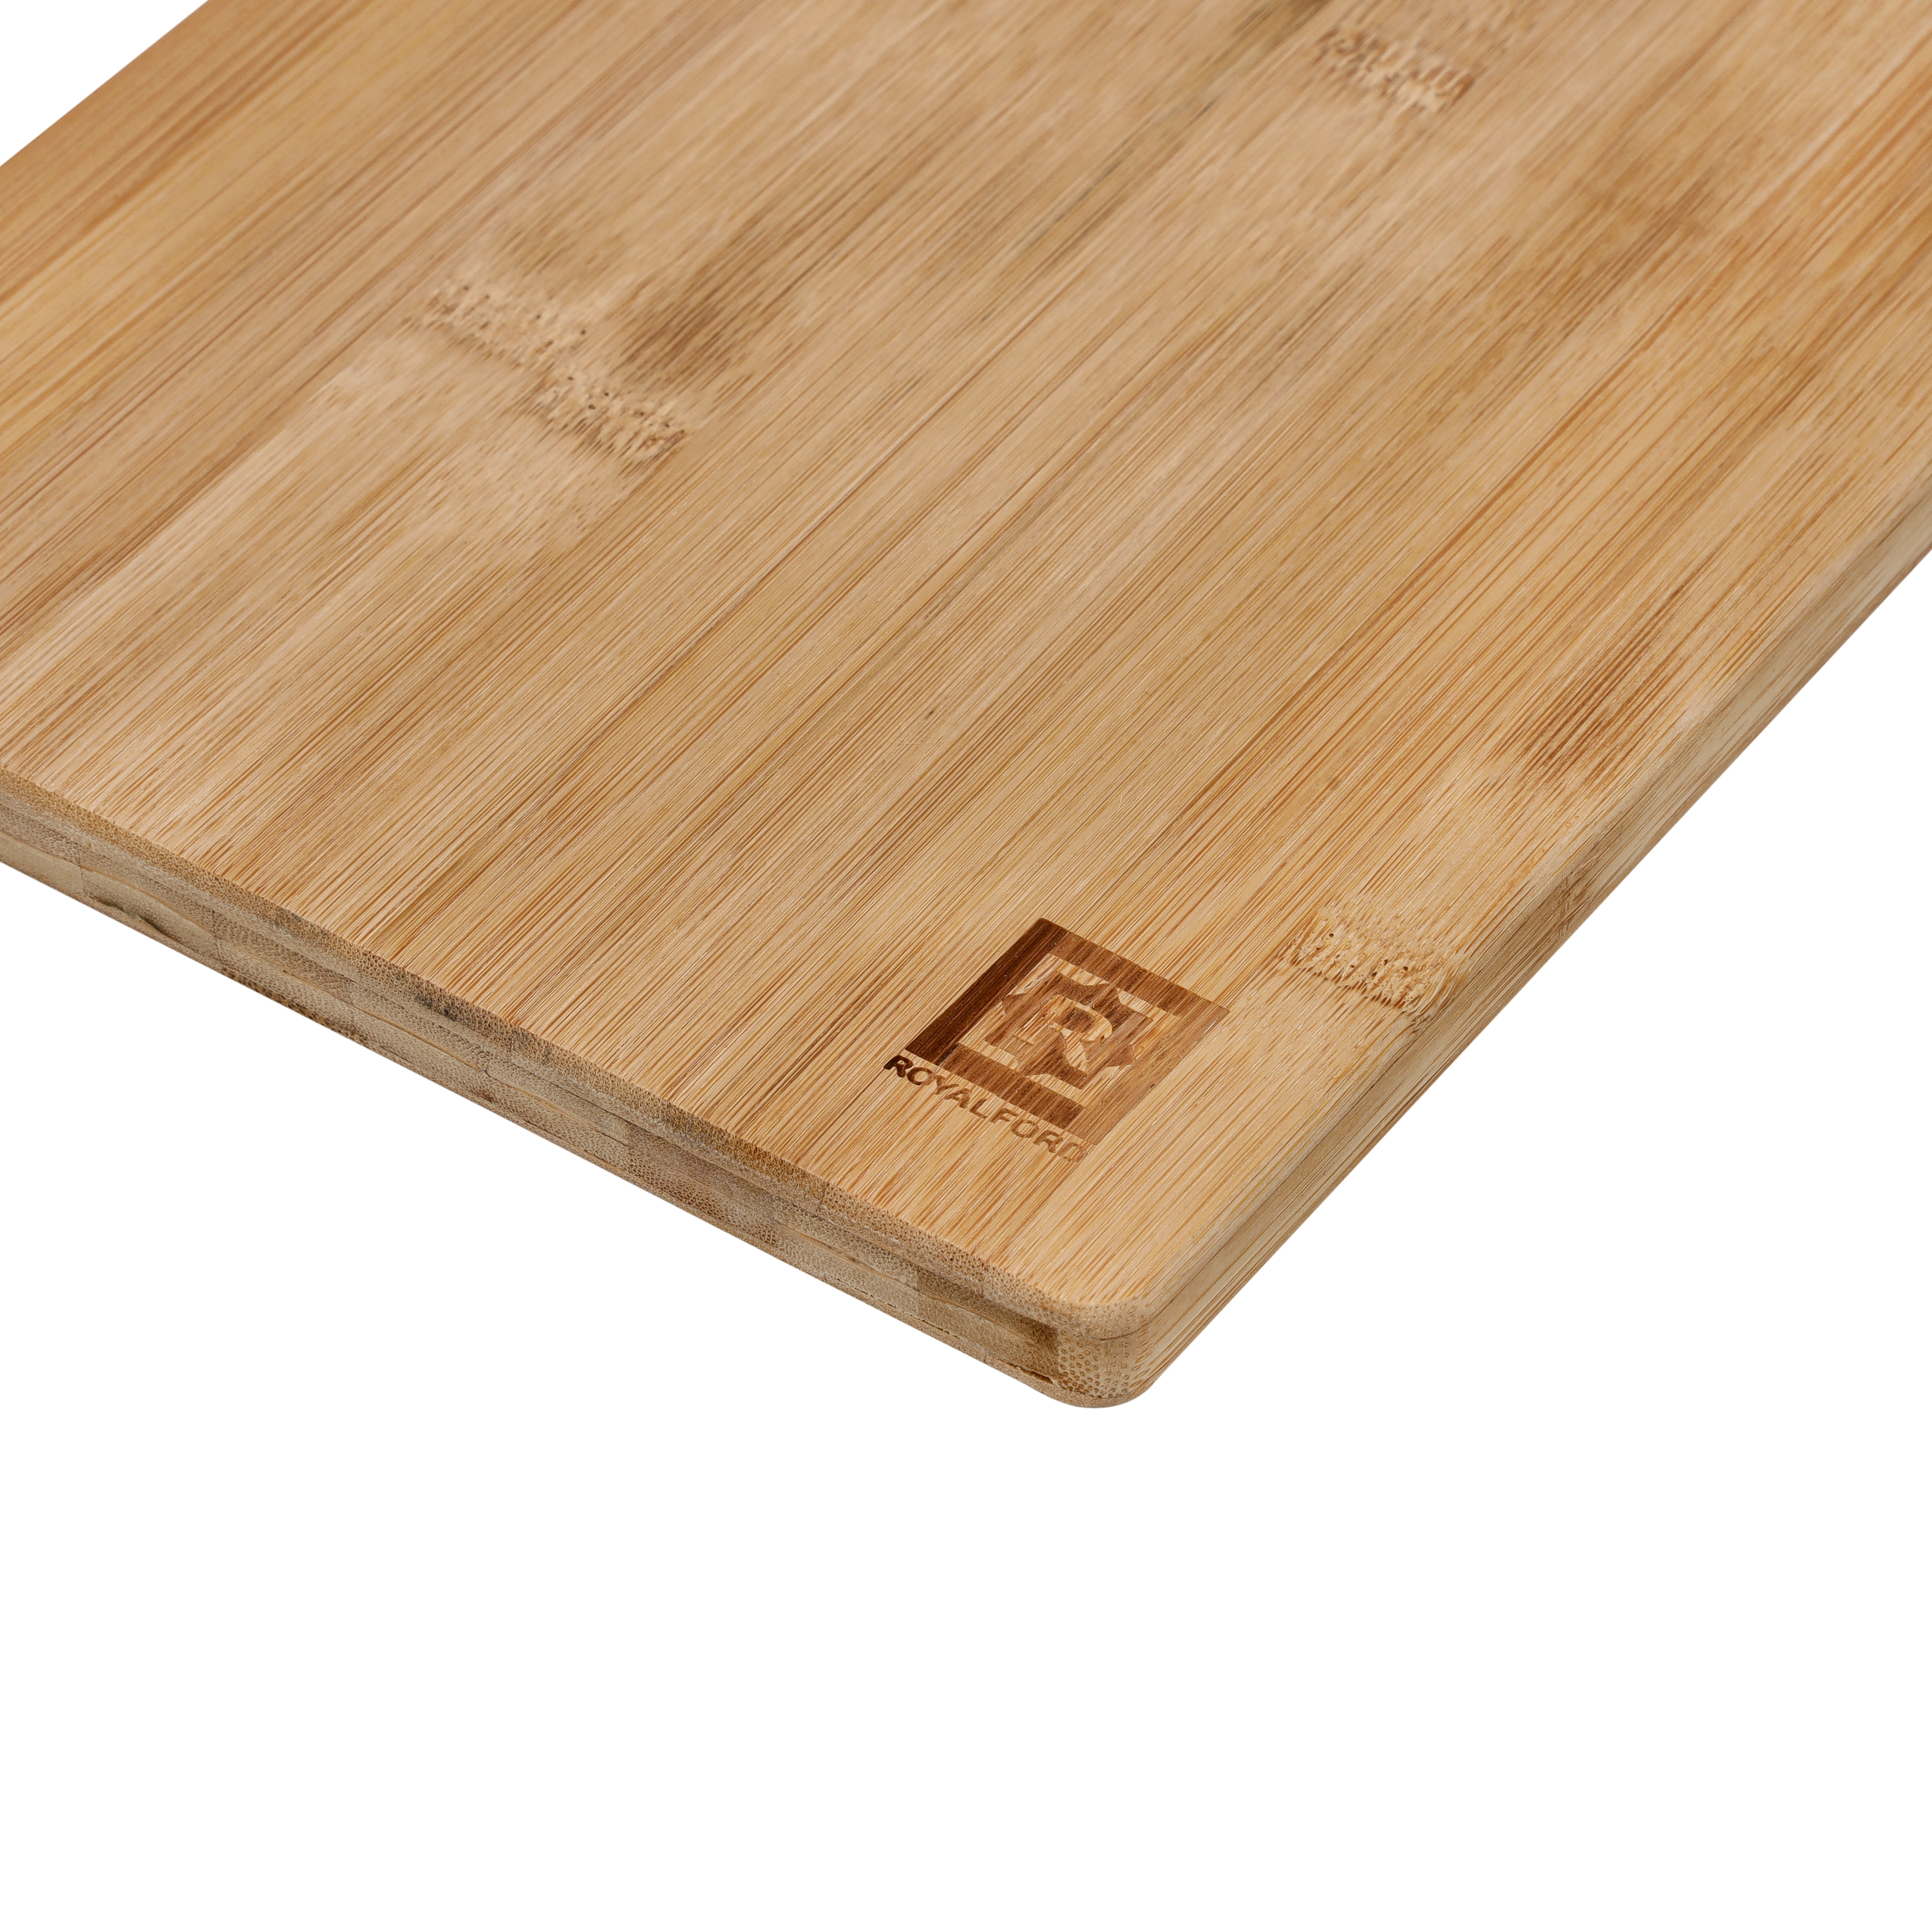 Bamboo Cutting Board 32x22x1.6CM